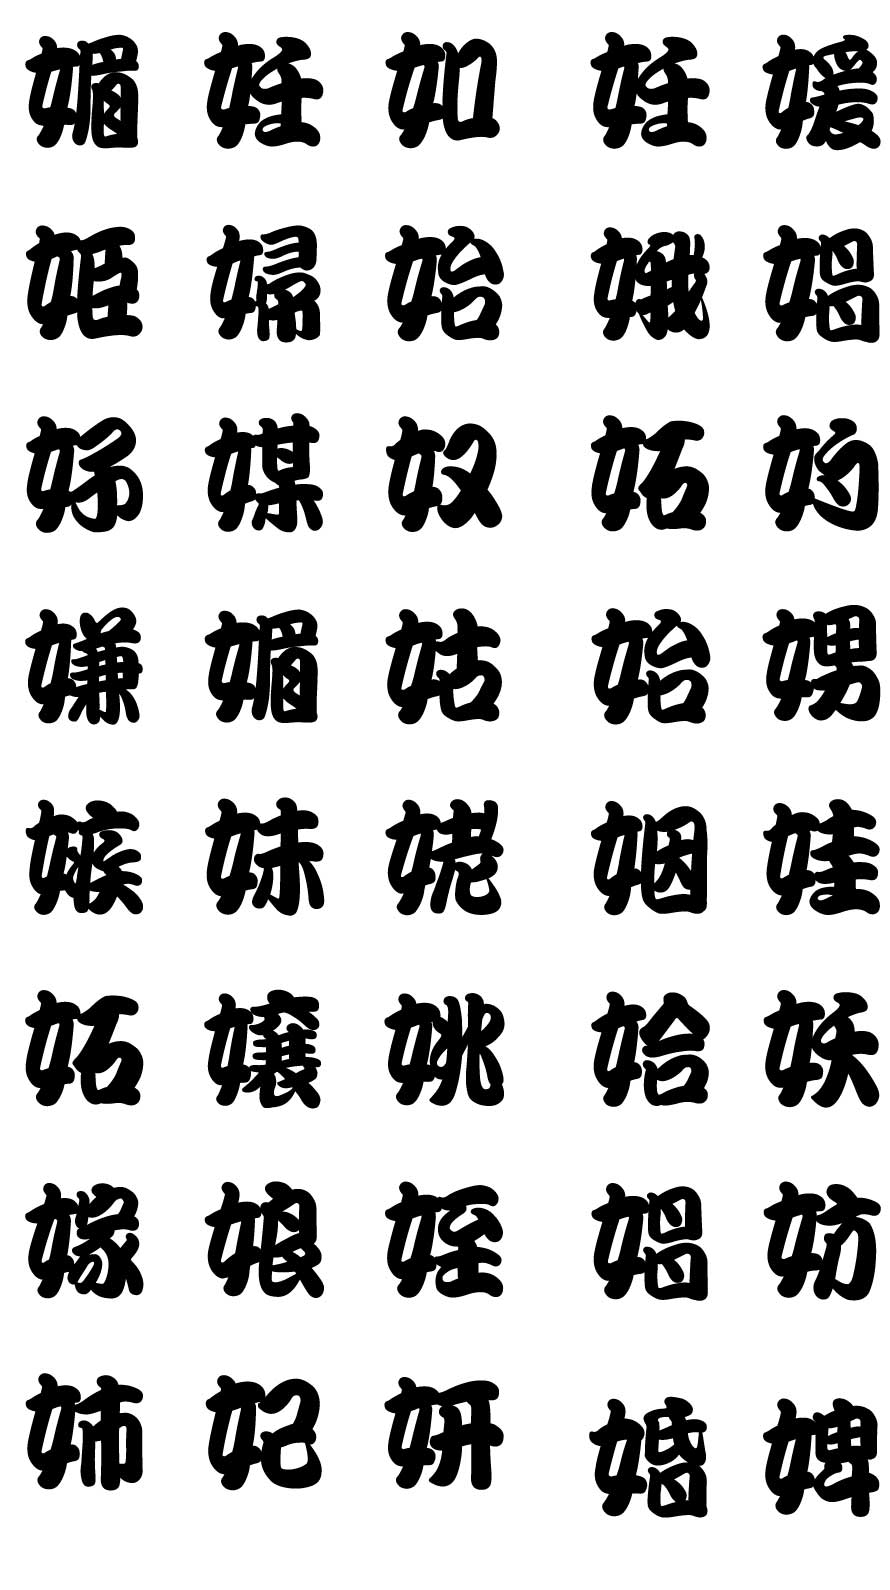 エロ注意 超恥ずかしいジョーク壁紙 魚漢字湯のみ風の隠語漢字の待ち画面 Iphone Android対応 スマホlaboホンテン